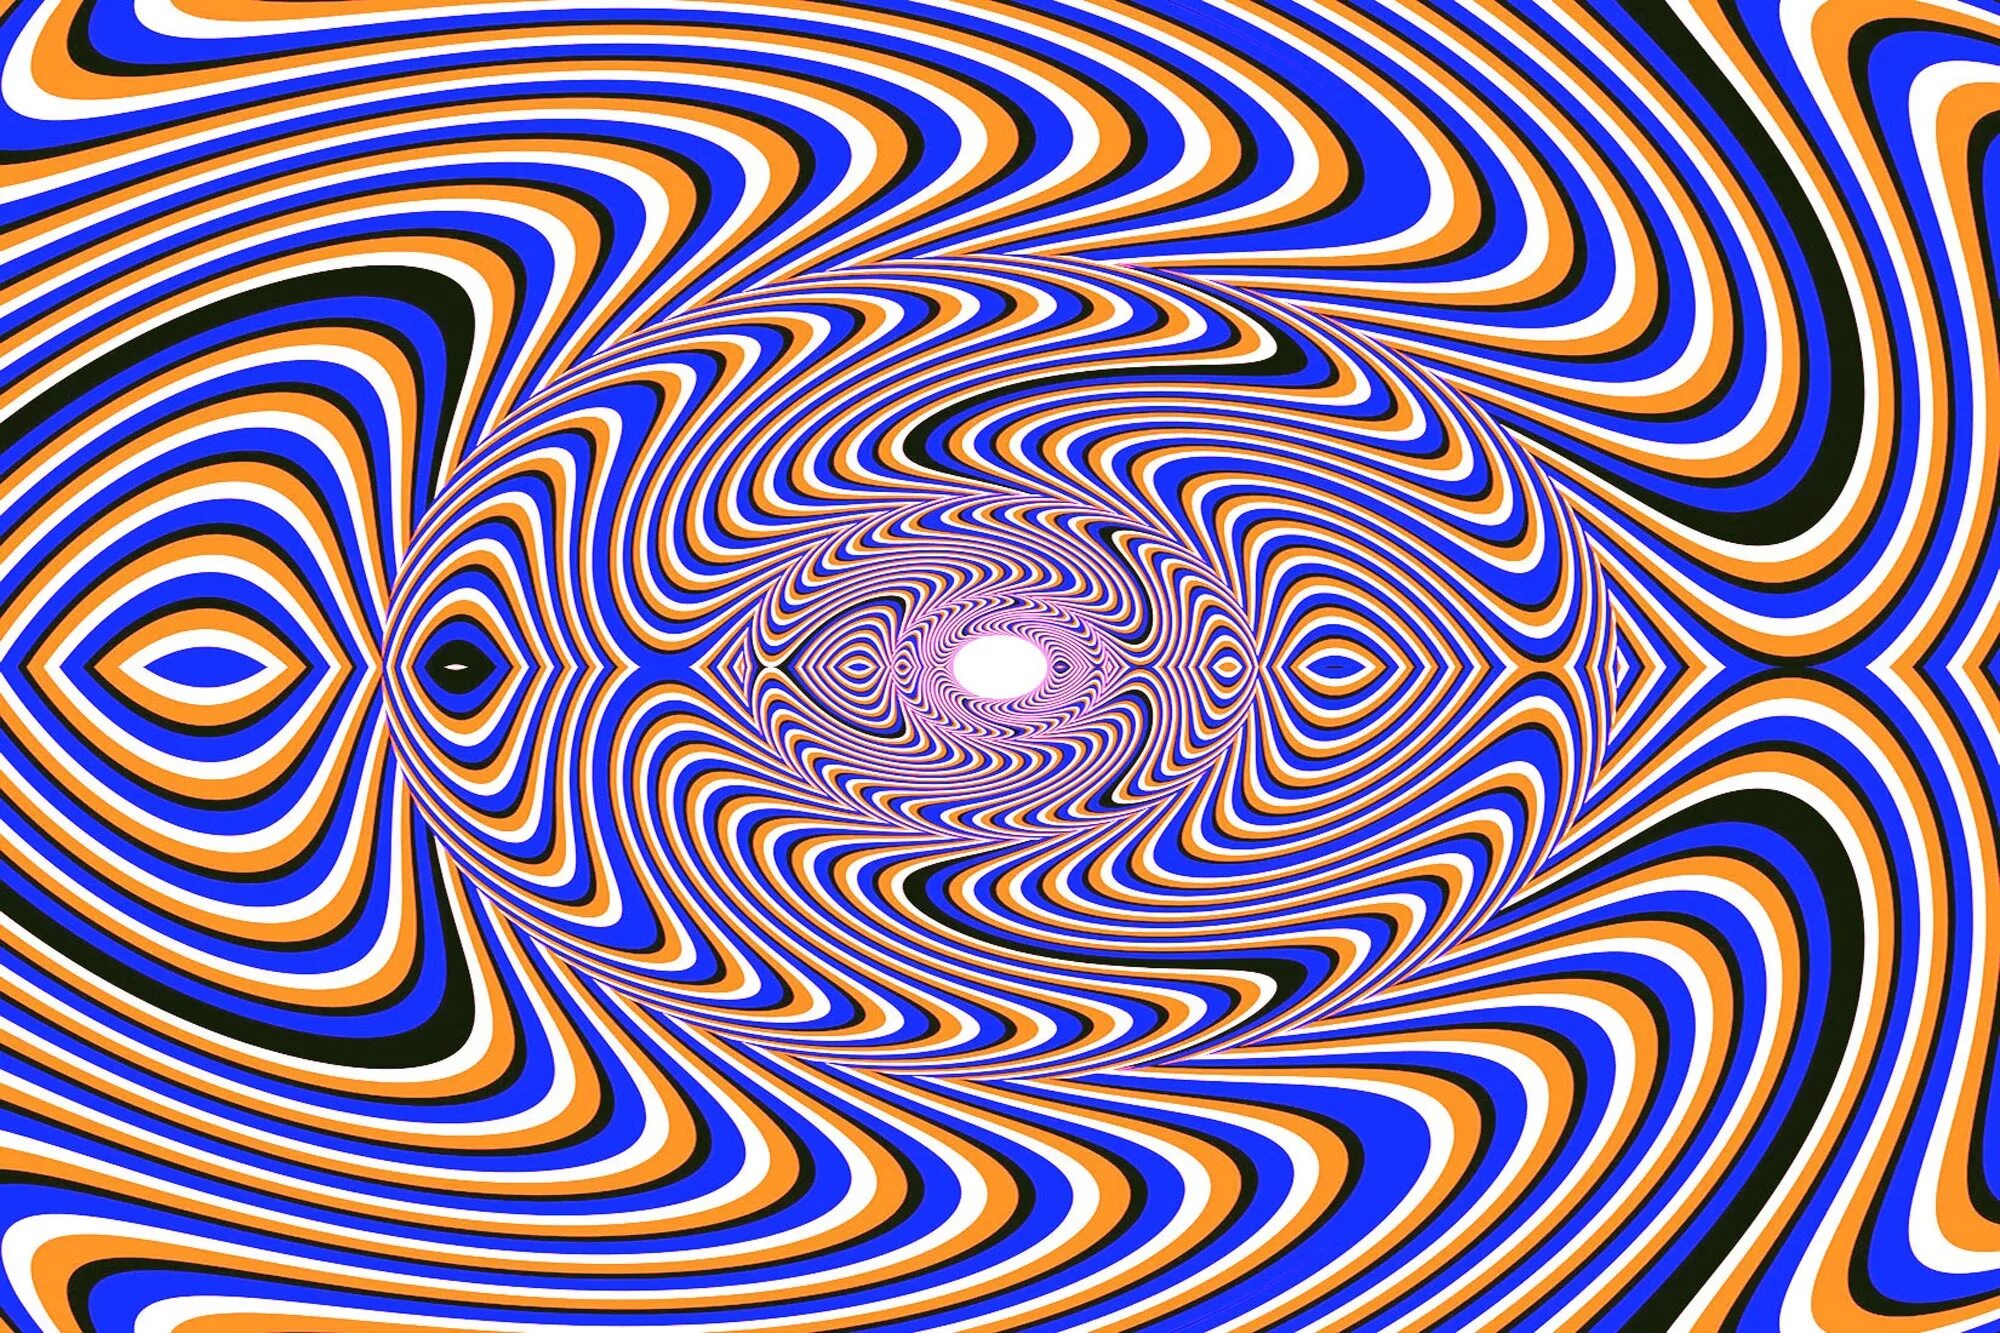 Оптикал Иллюжн. «Оптические иллюзии» (Автор Джейкобс ПЭТ). Зрительные иллюзии. Визуальные иллюзии. Двигаться б